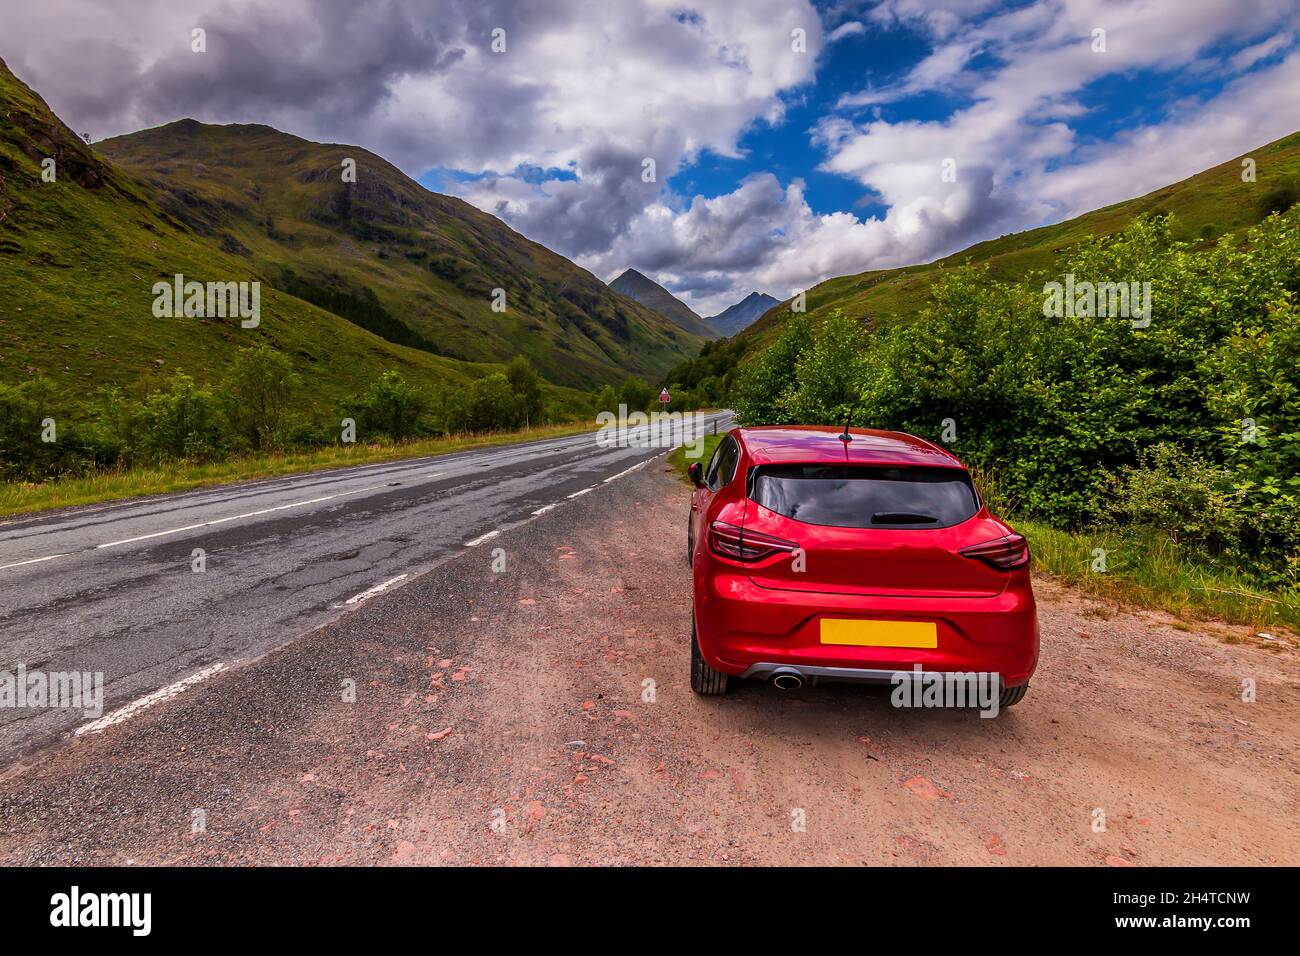 Car dash lights -Fotos und -Bildmaterial in hoher Auflösung – Alamy